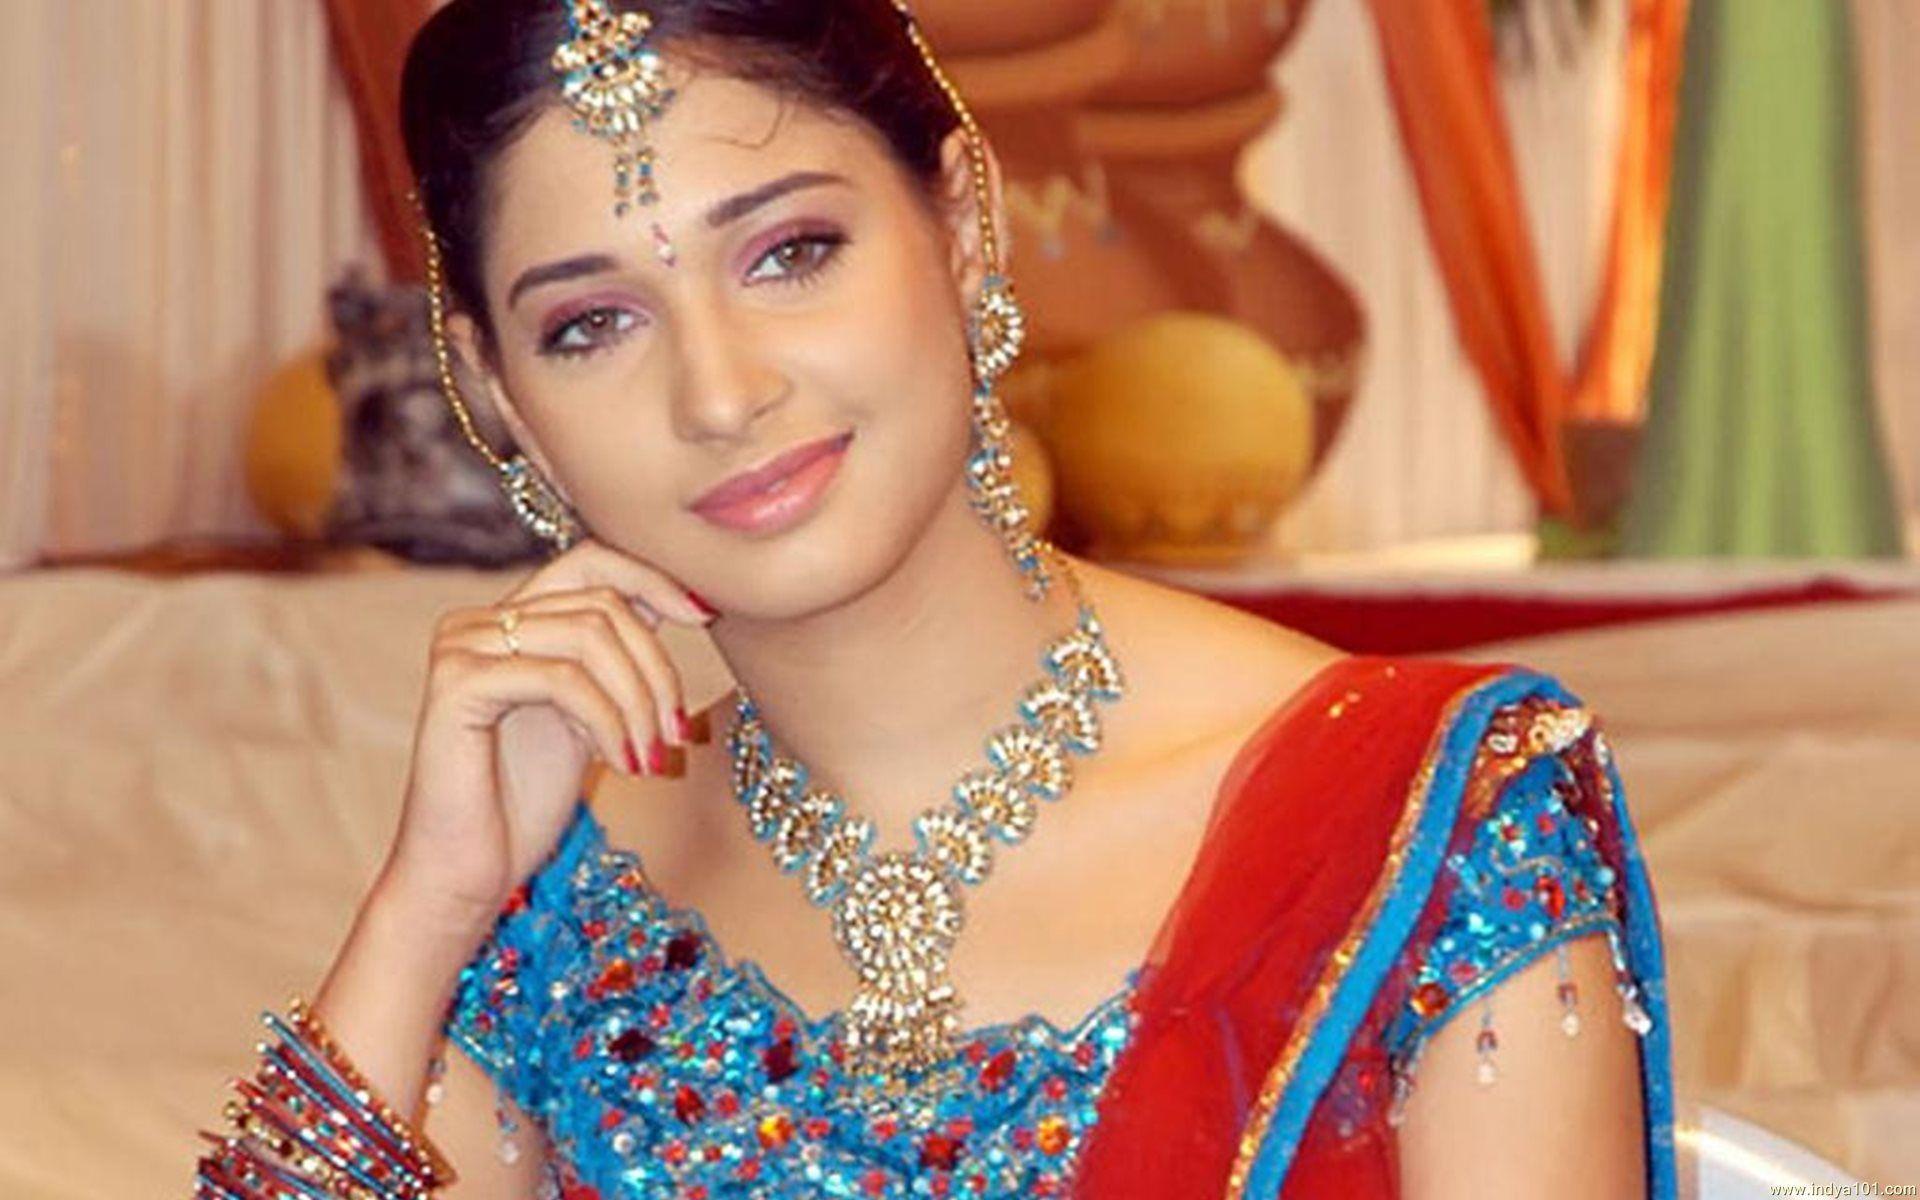 Tamanna Bhatia HD Wallpaper Free Download 4. Bollywood Actress